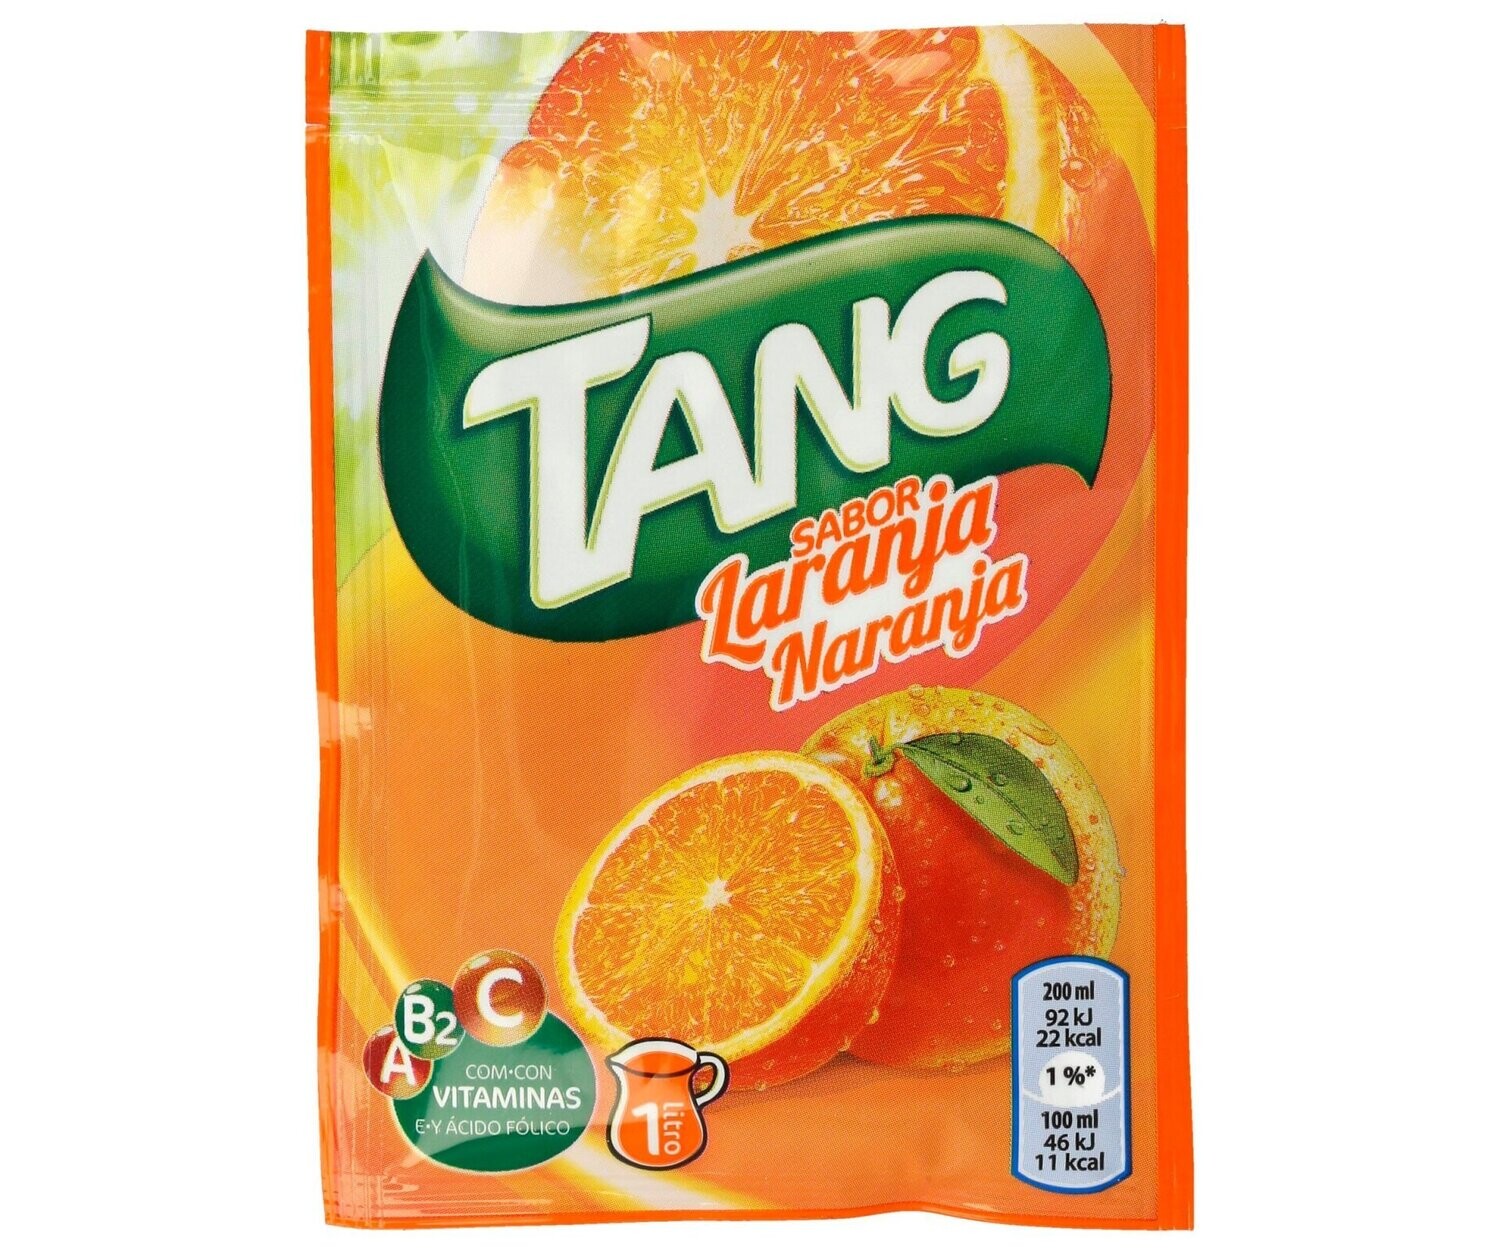 Bebida de naranja en polvo TANG 30 g.